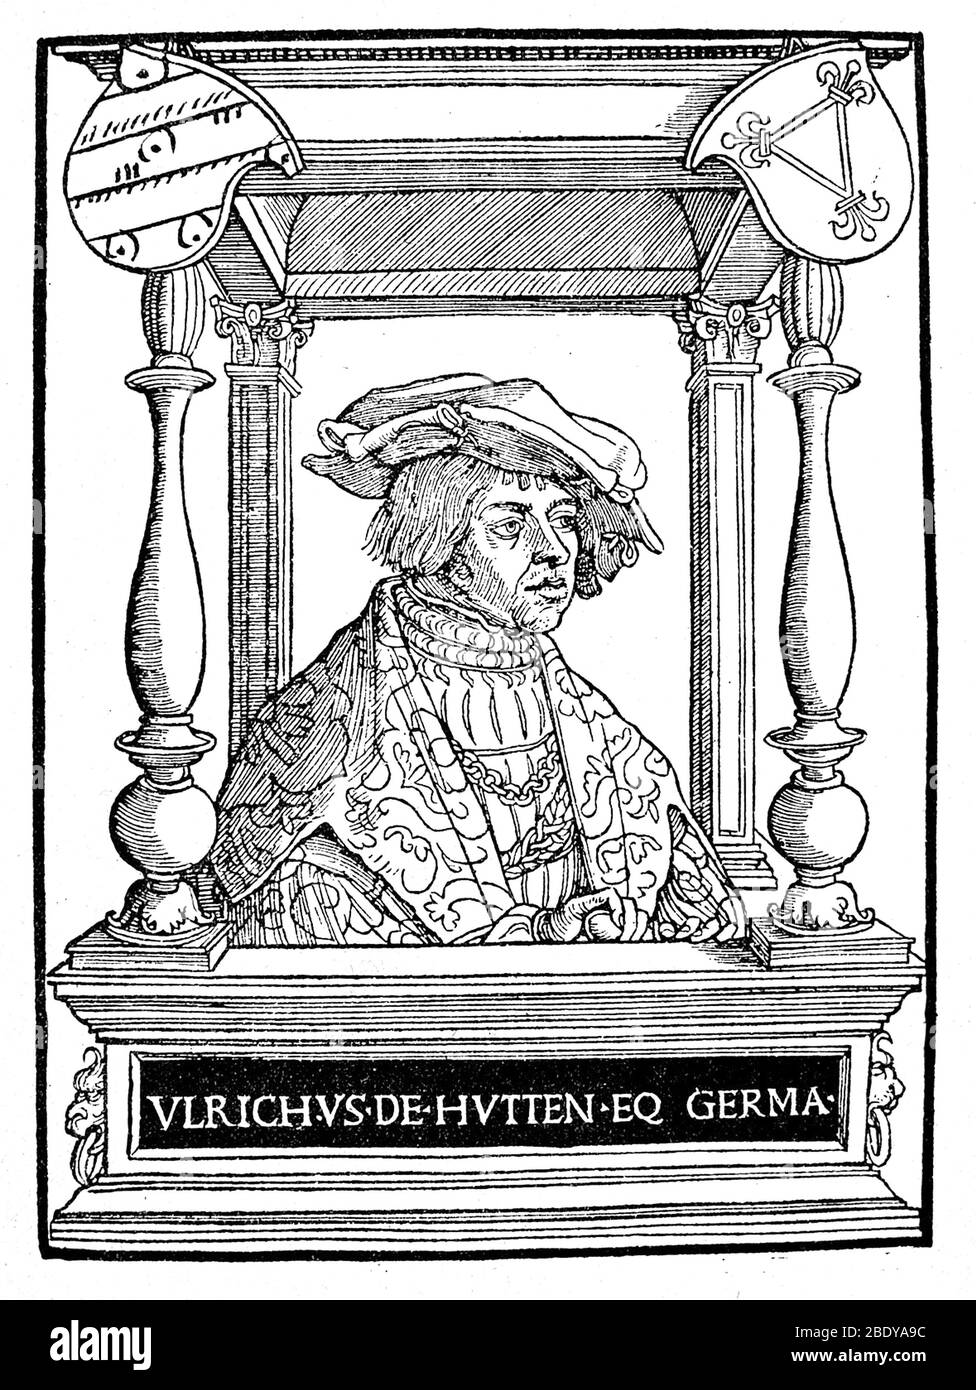 Ulrich von Hutten, German Poet and Reformer Stock Photo